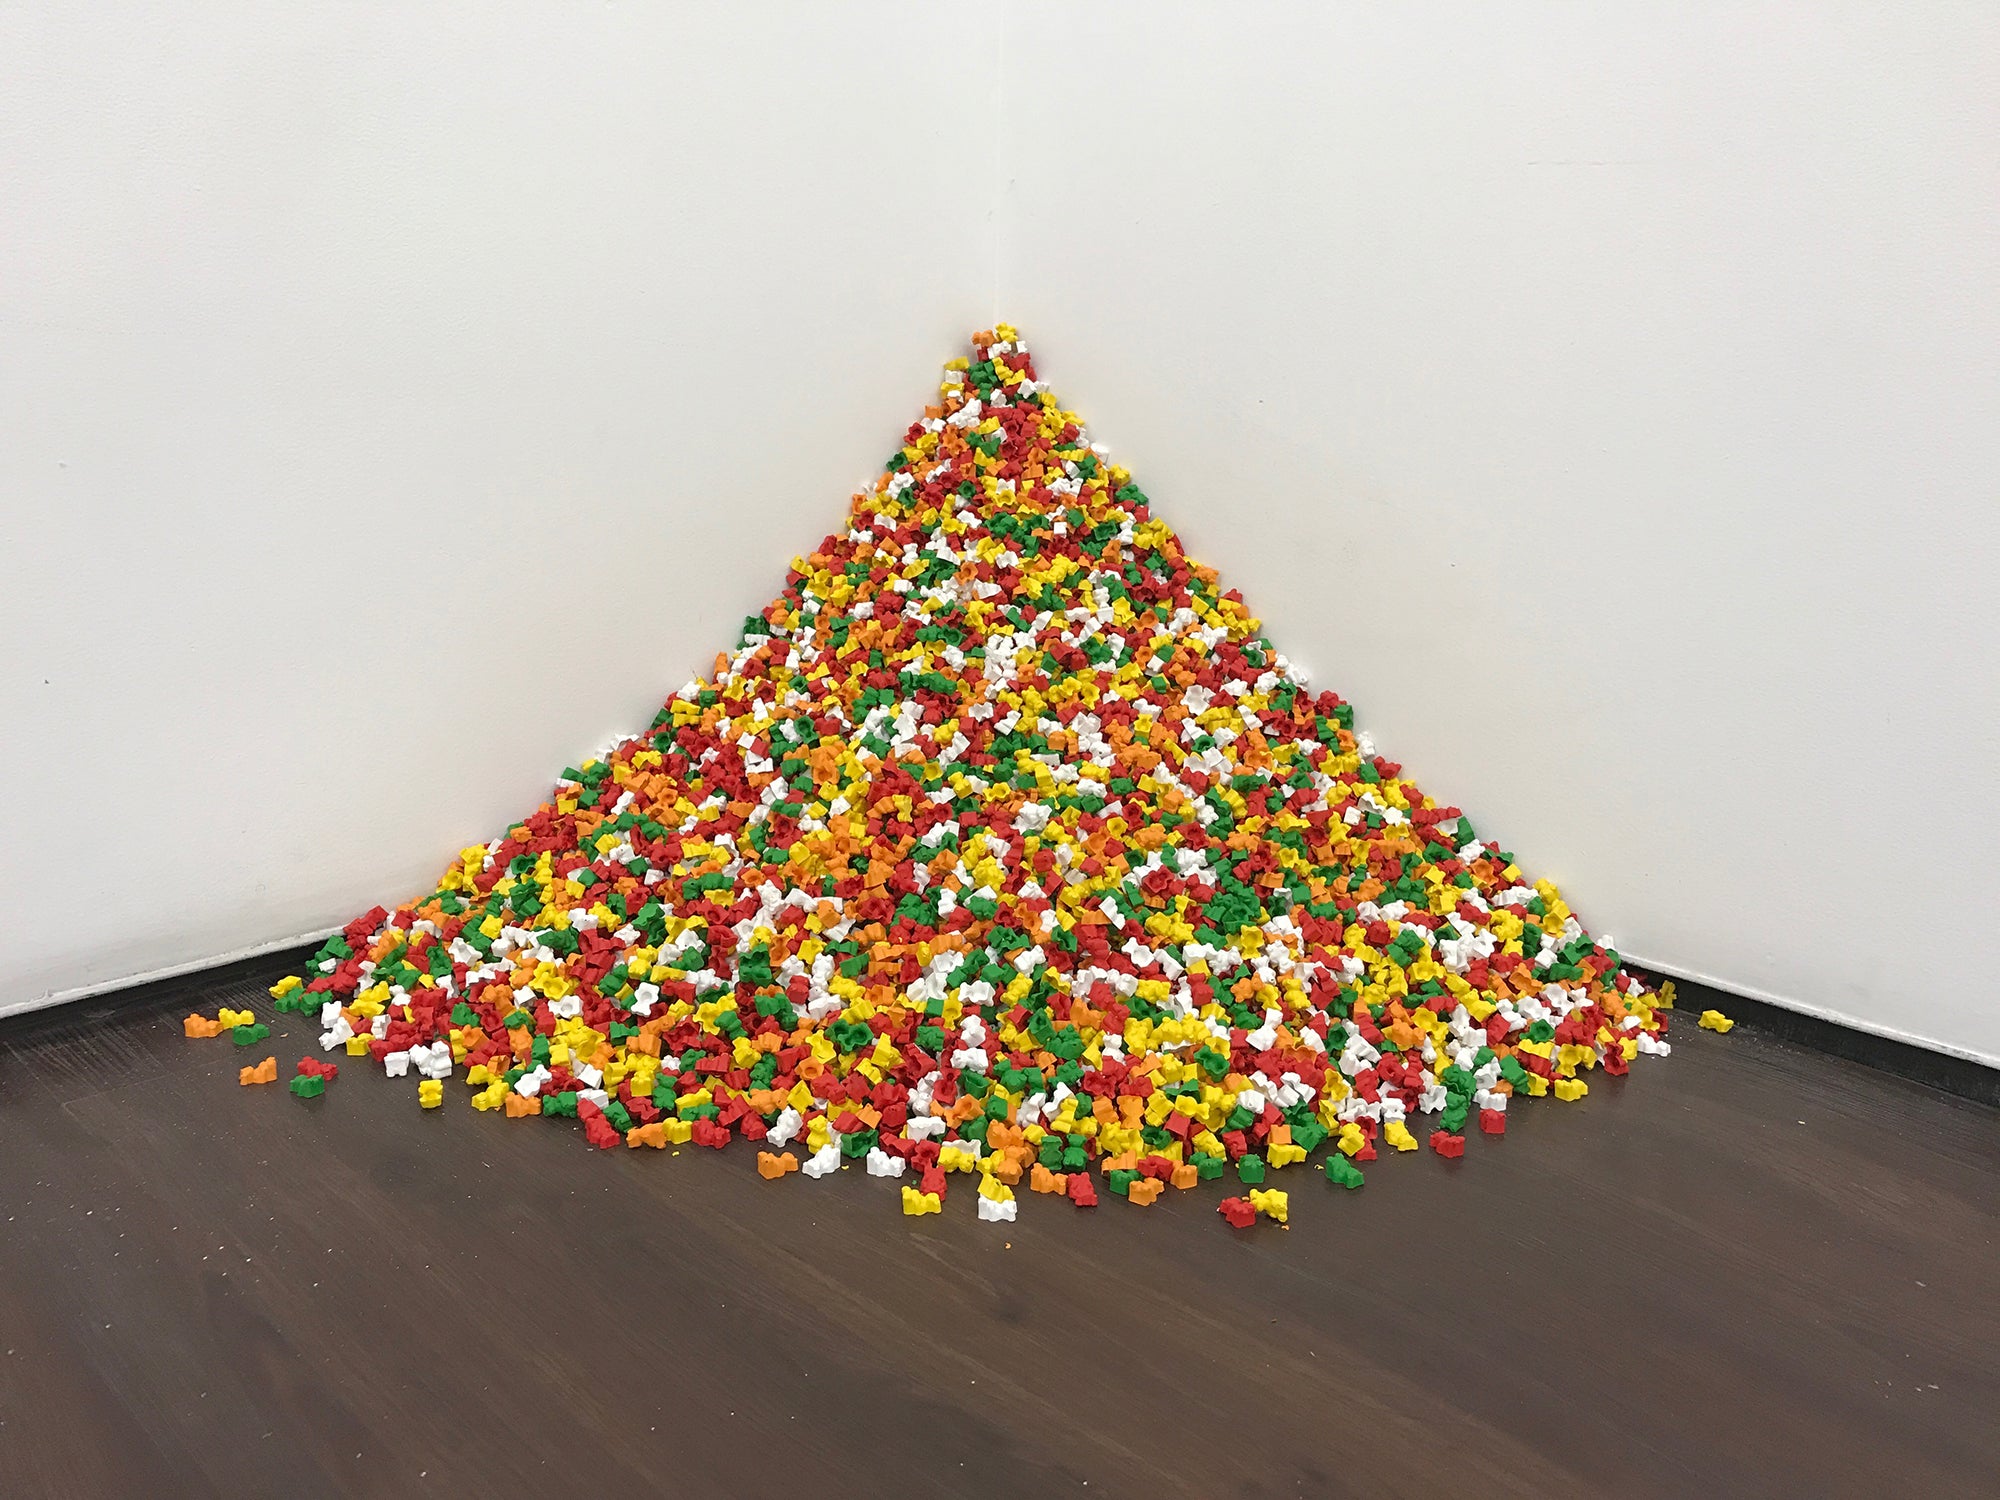 Steven Wolkoff, "Gummy Behrs"